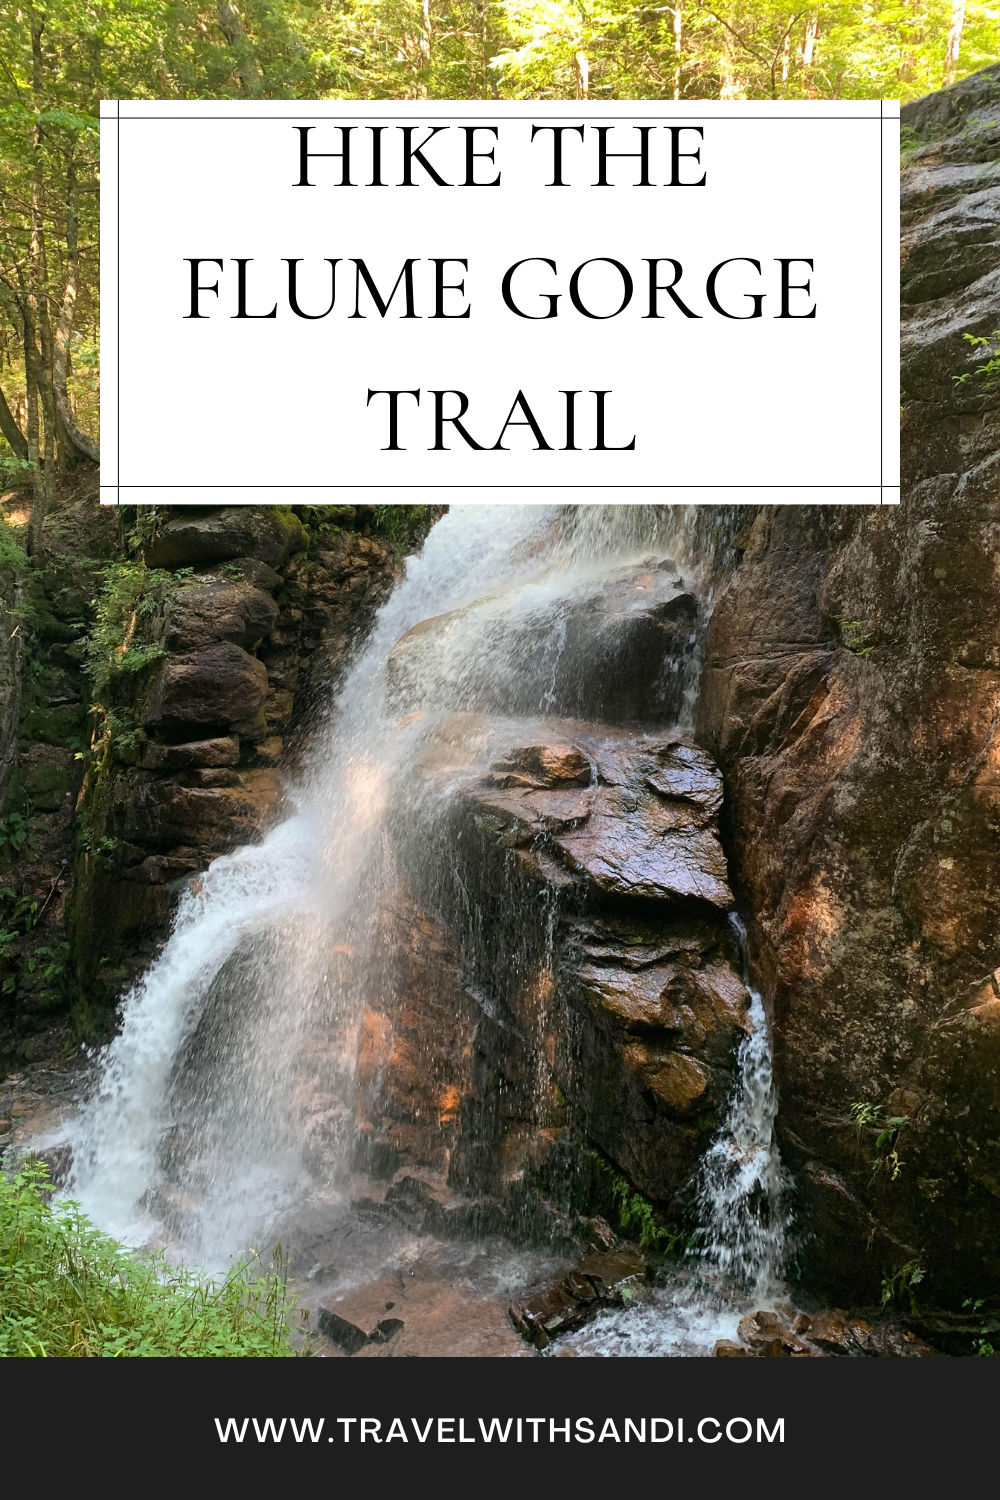 Hike The Flume Gorge Trail